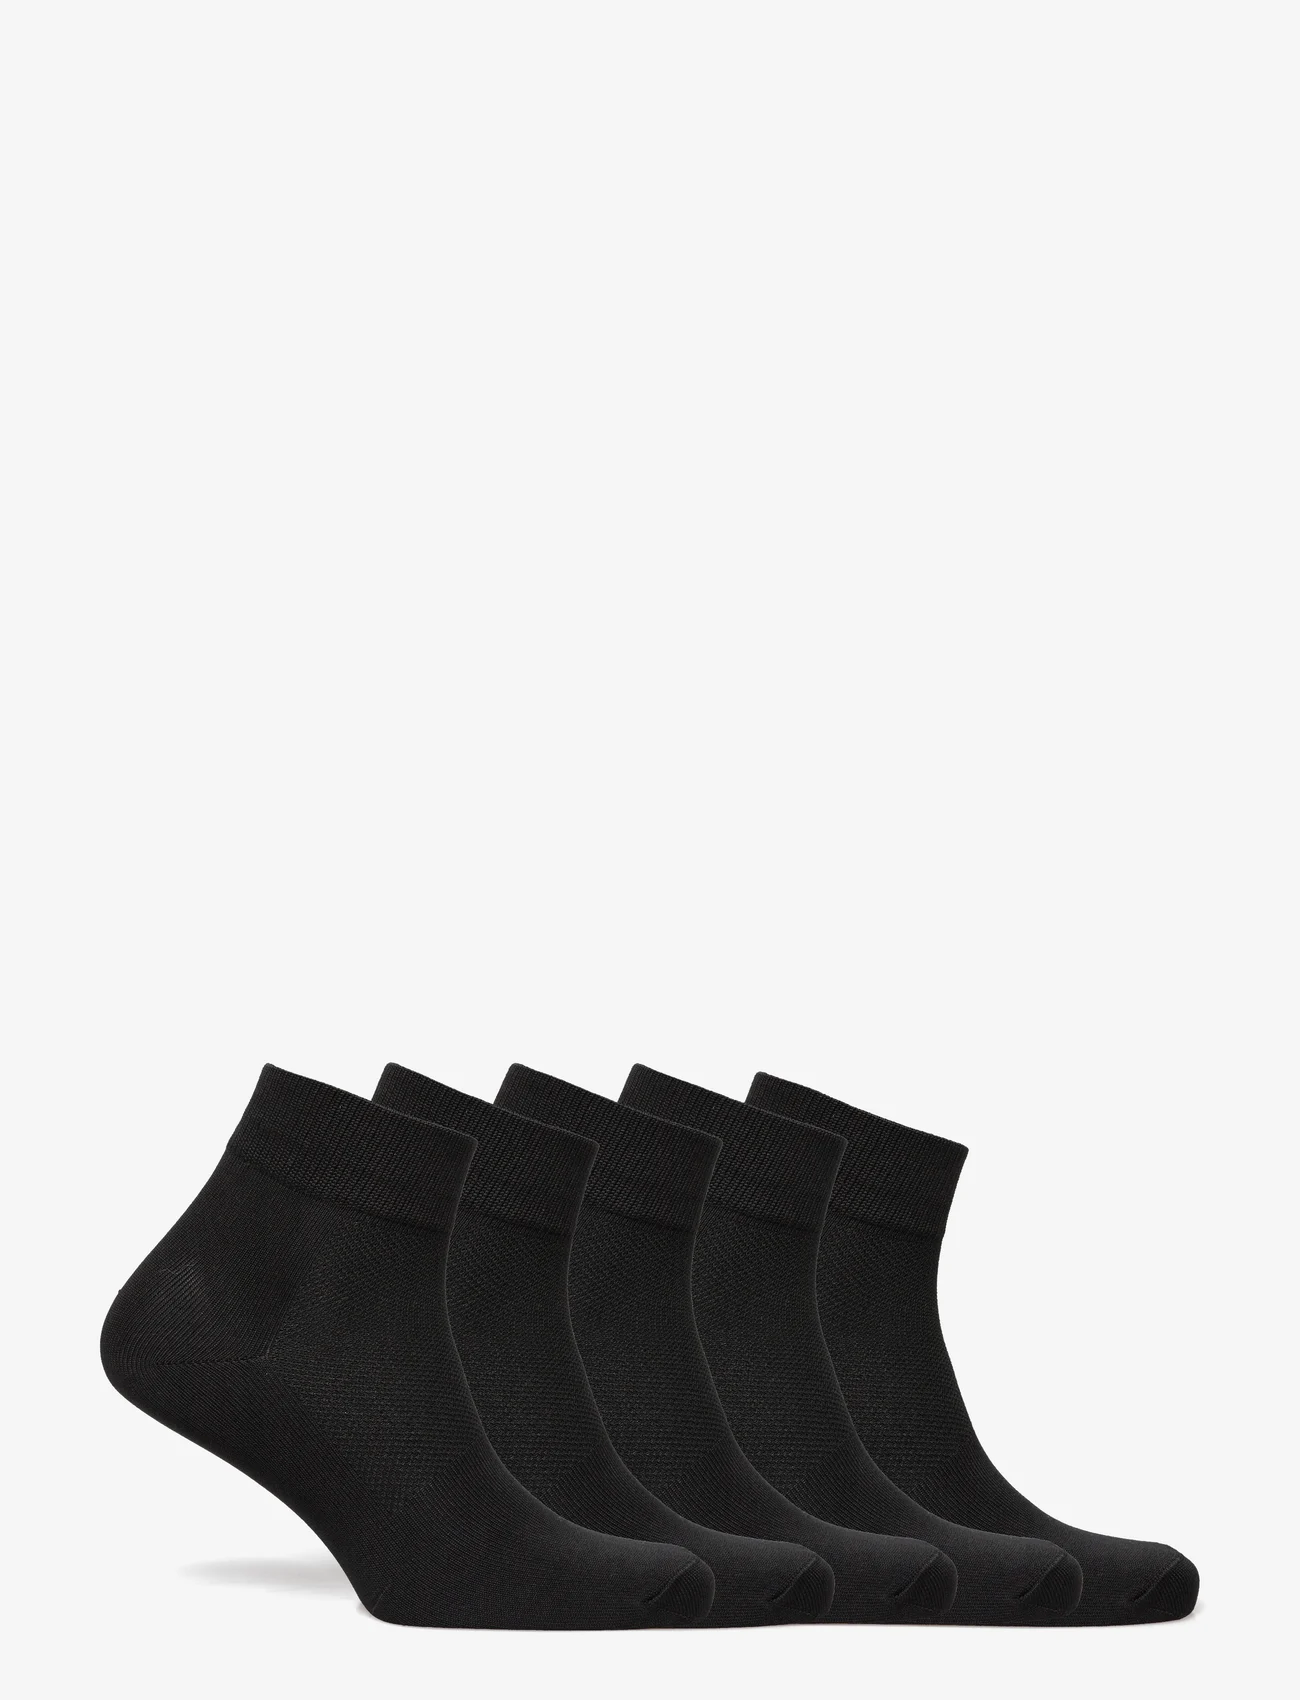 ZEBDIA - 5-PK Basic Running Socks - zemākās cenas - black - 1